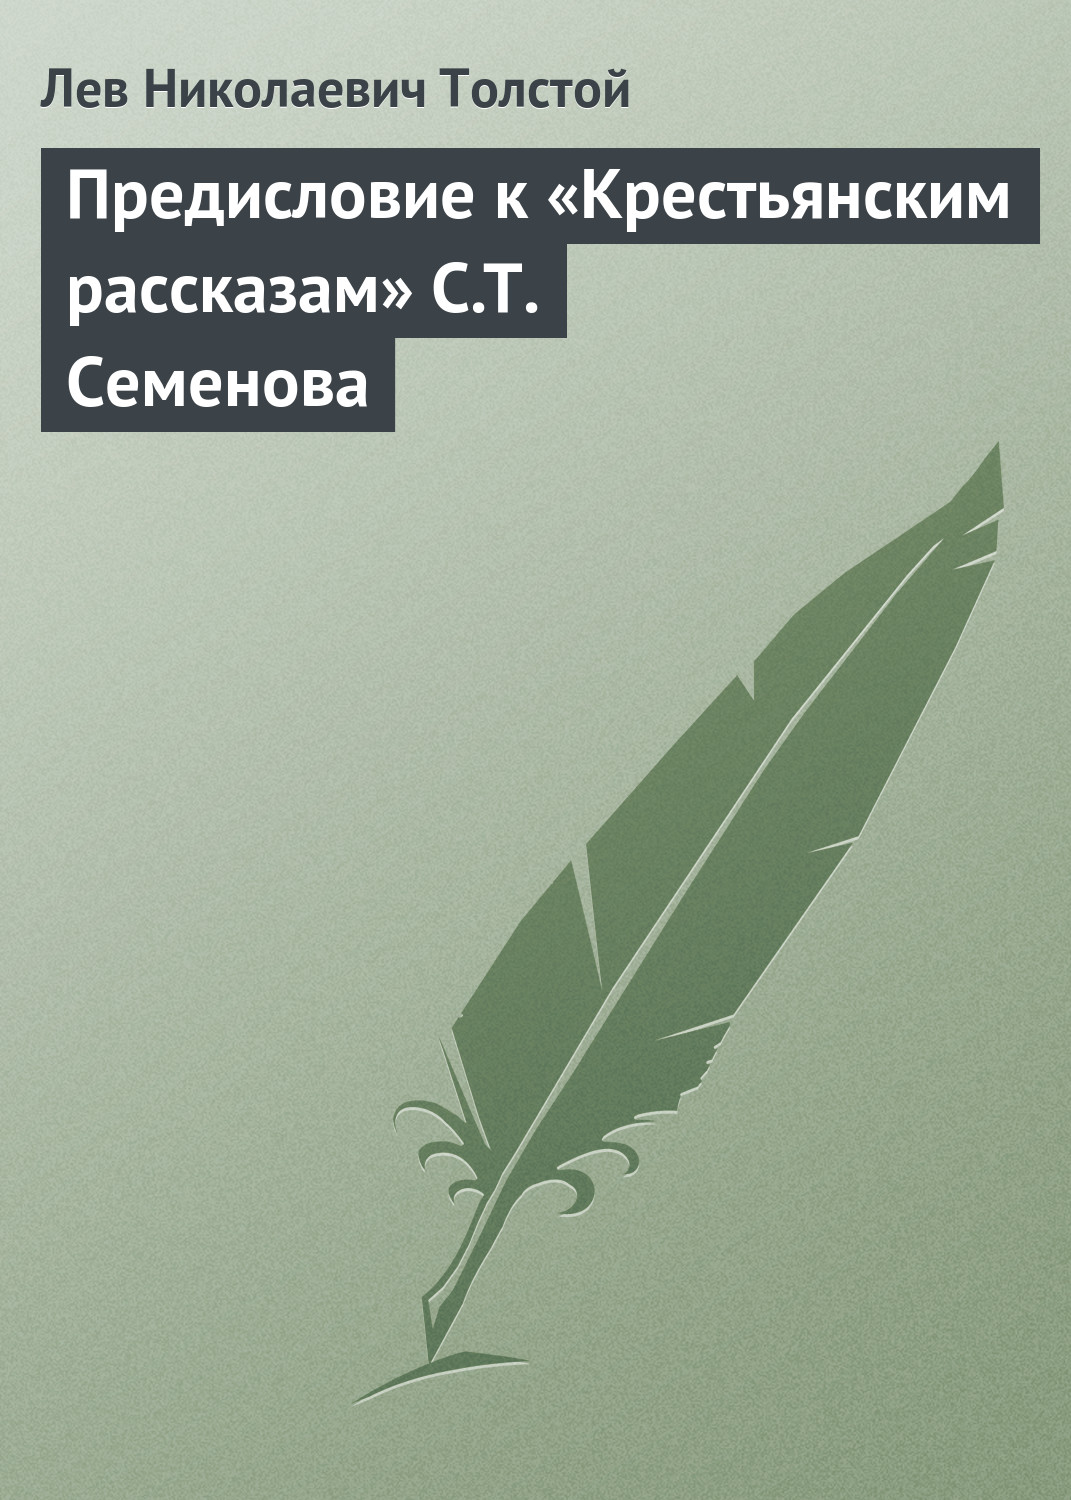 Предисловие к «Крестьянским рассказам» С.Т. Семенова